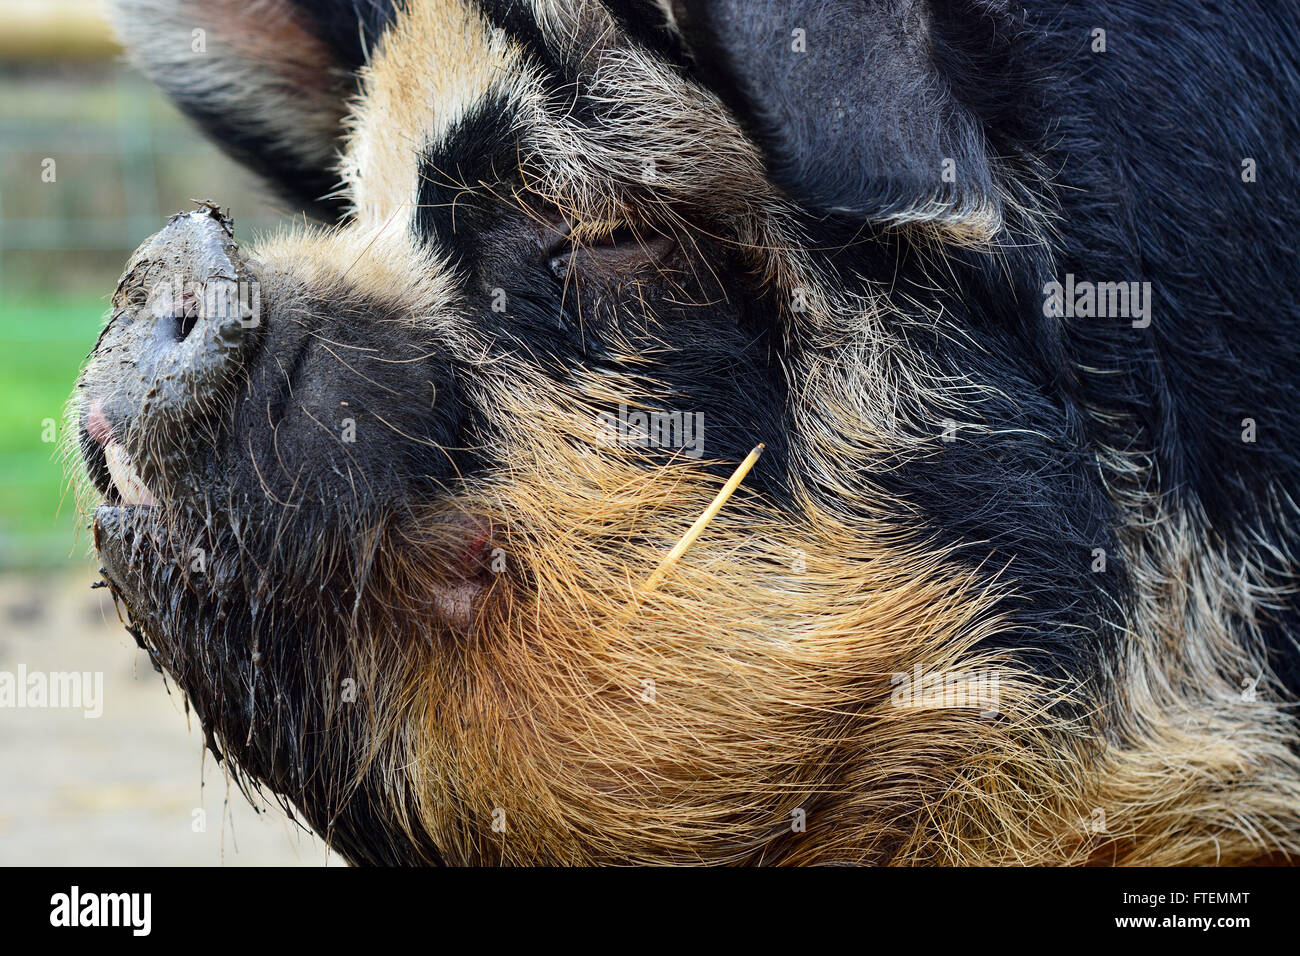 Maiale Kunekune colpo alla testa. Un insolito razza rara di maiale di piccole dimensioni che mostra il dettaglio della testa in profilo, in una fattoria nel Somerset, Regno Unito Foto Stock